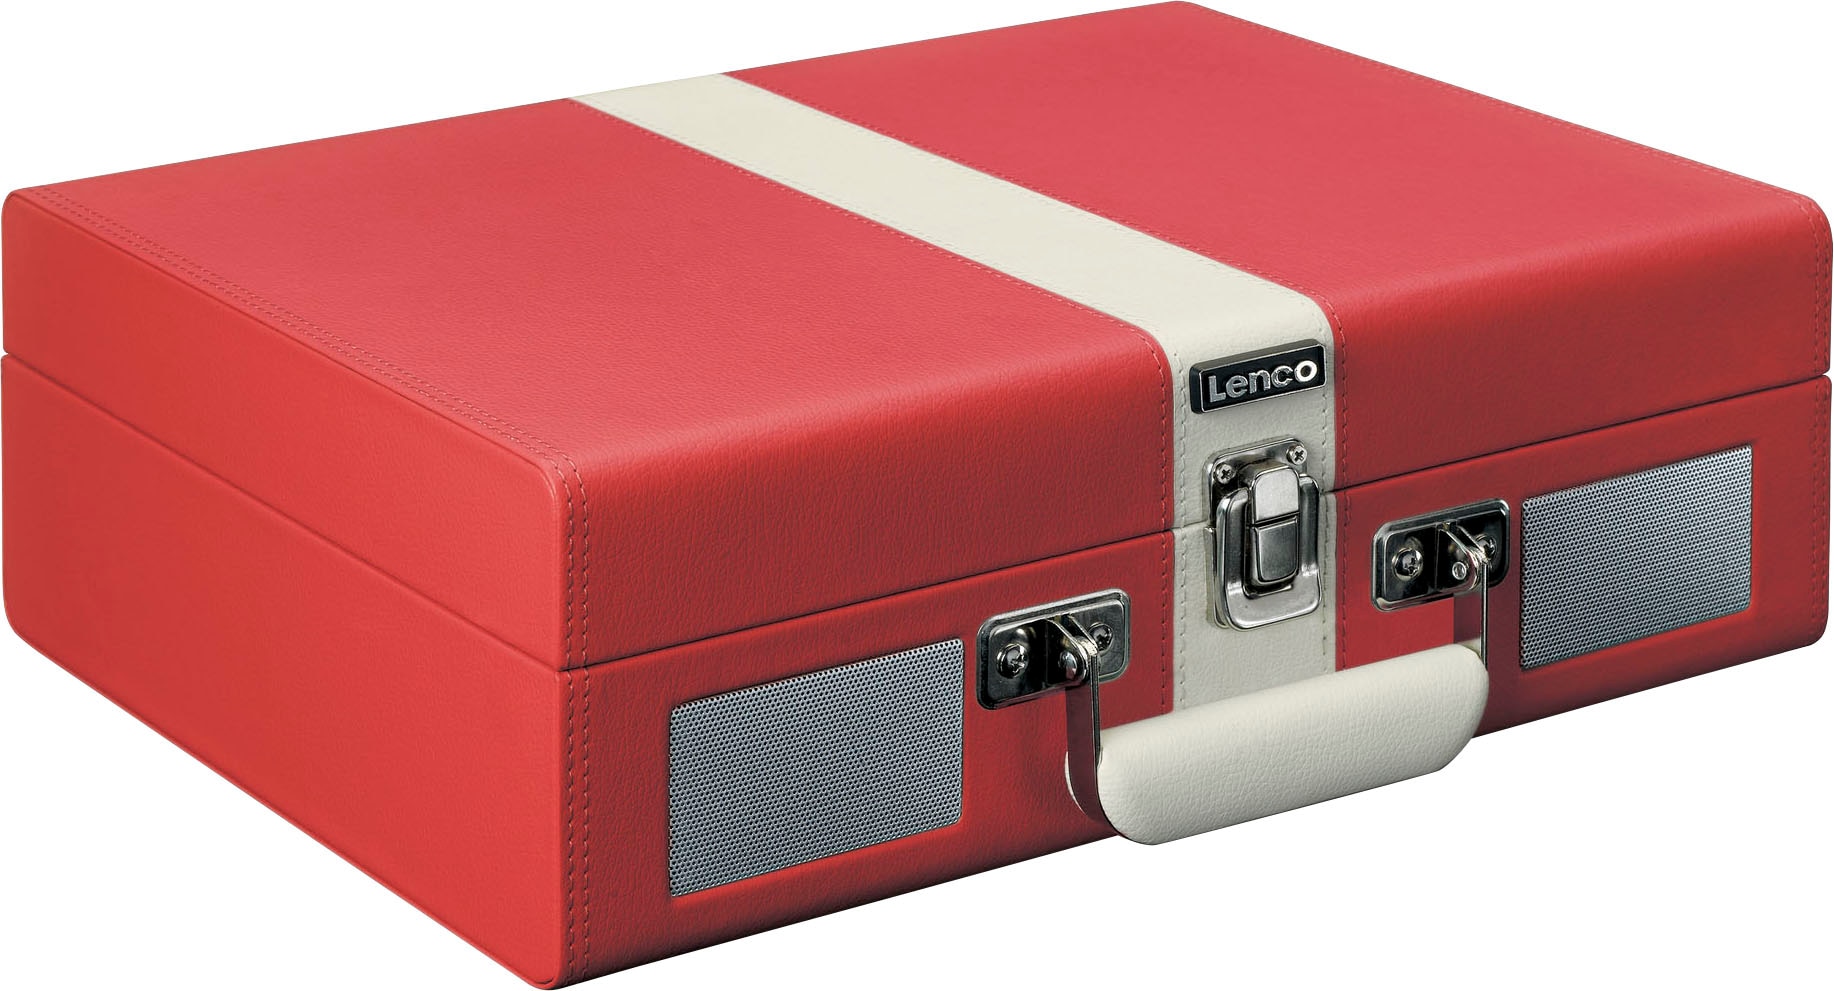 Lenco Plattenspieler »Koffer-Plattenspieler mit BT und OTTO bei Lsp.« eingebauten jetzt